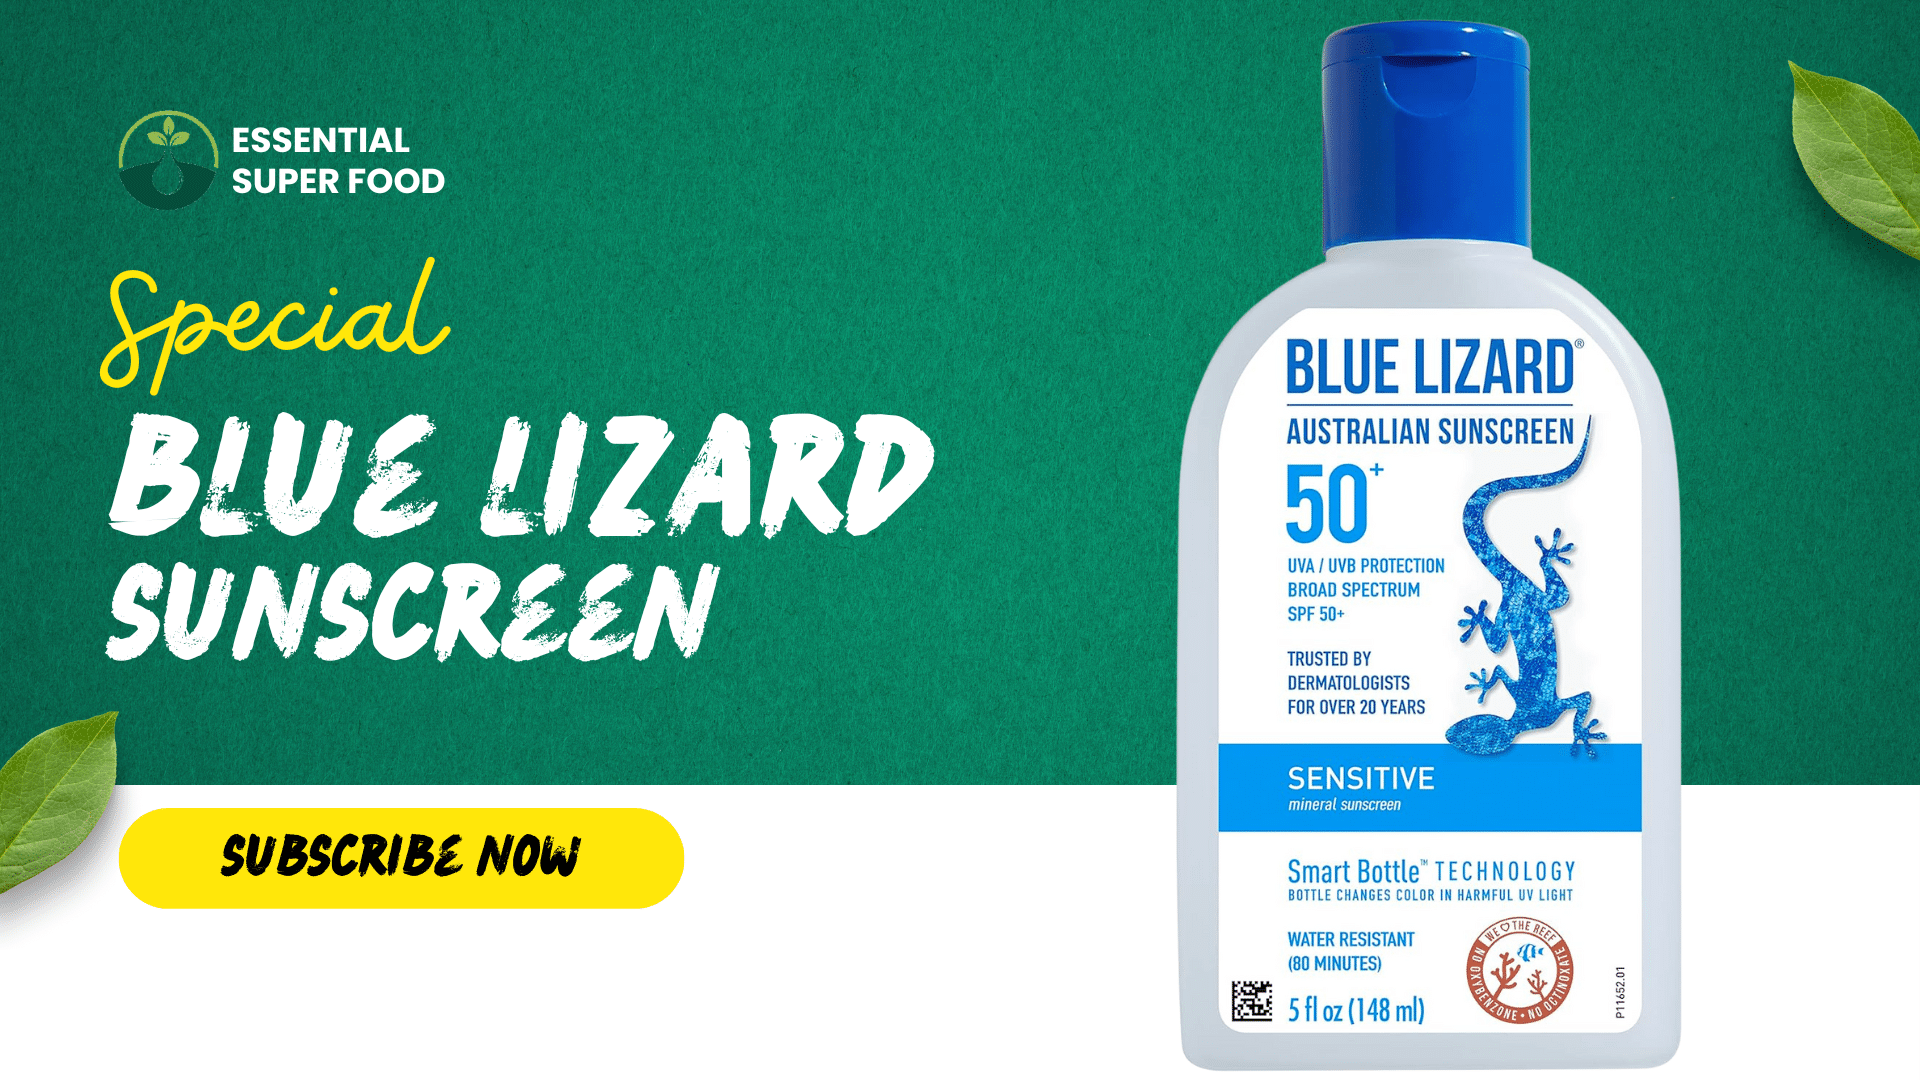 A bottle of Blue Lizard Sunscreen